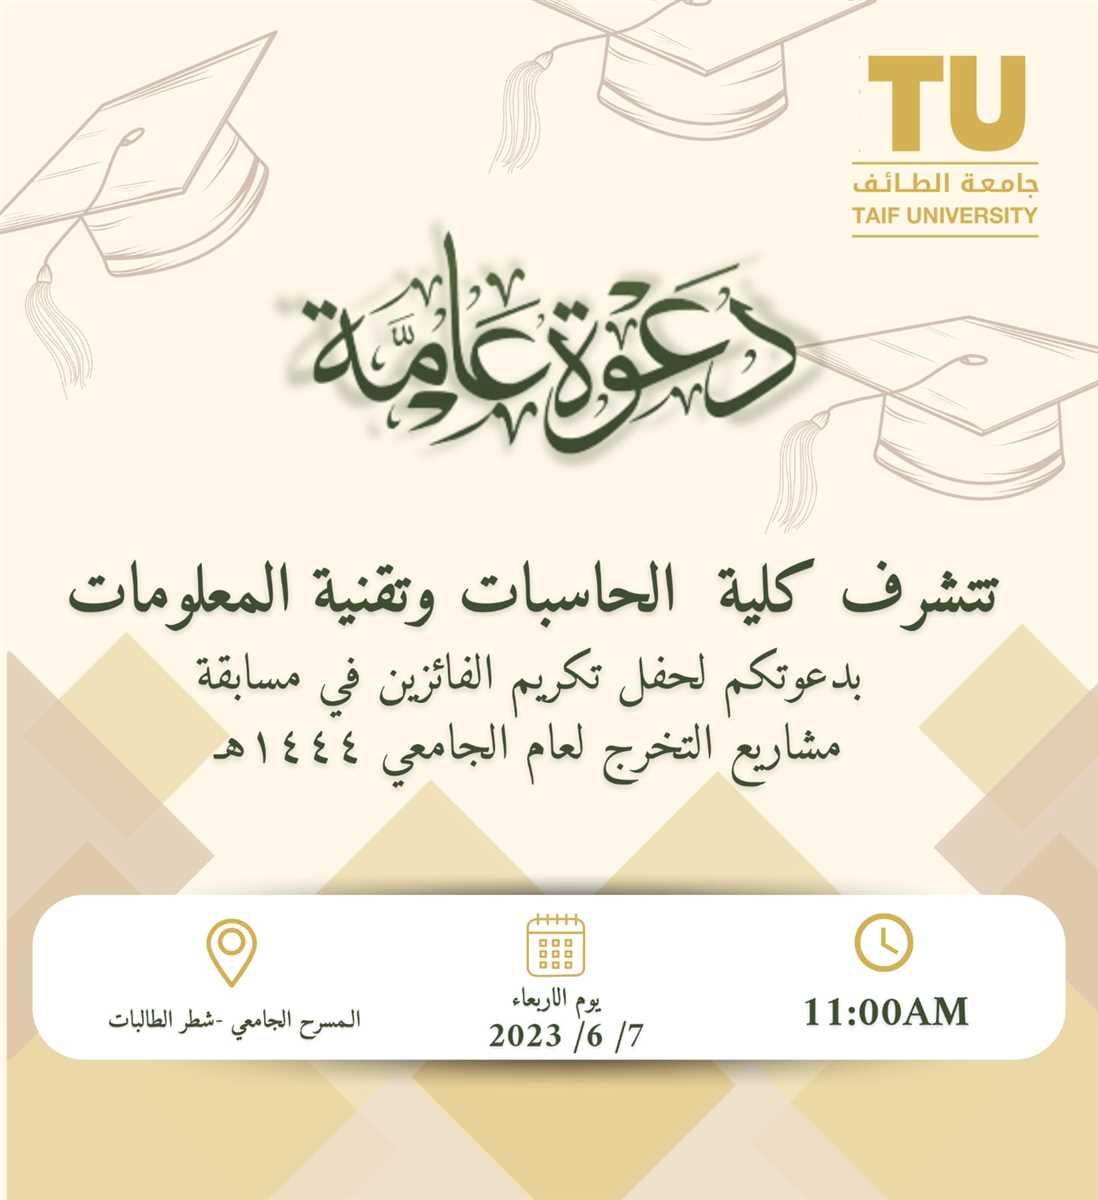 دعوة لحضور حفل تكريم الفائزين فى مسابقة مشاريع التخرج للعام الجامعى 1444